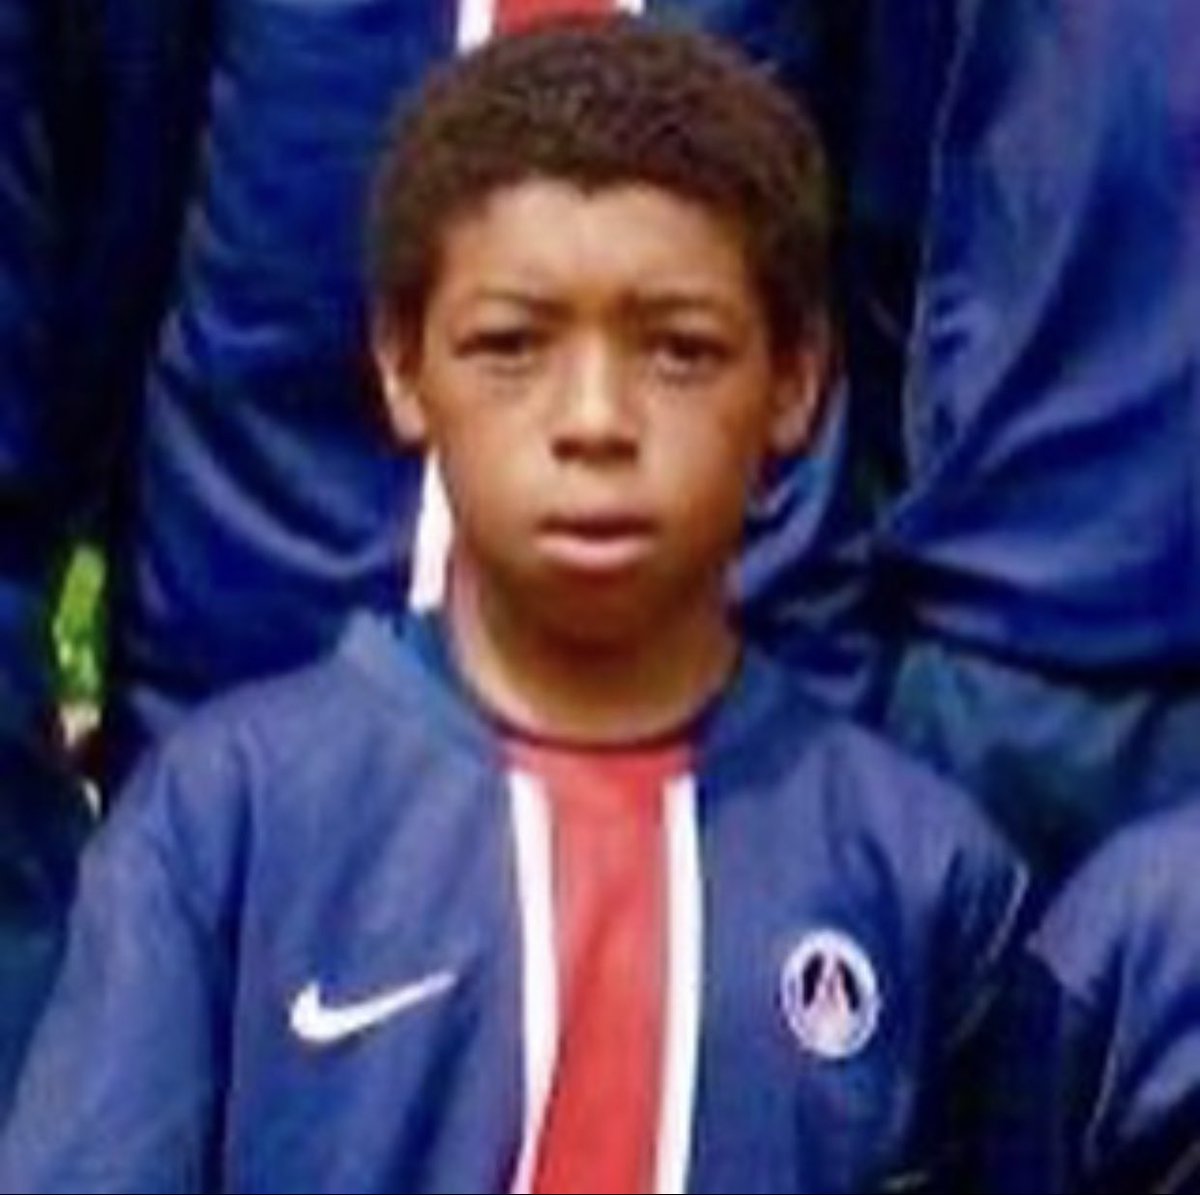 C’est à l’âge de 10 ans, en 2005 qu’il rejoint le centre de formation du PSG.Les joueurs formés au PSG et évoluant en équipe première sont prénommés « titi ».